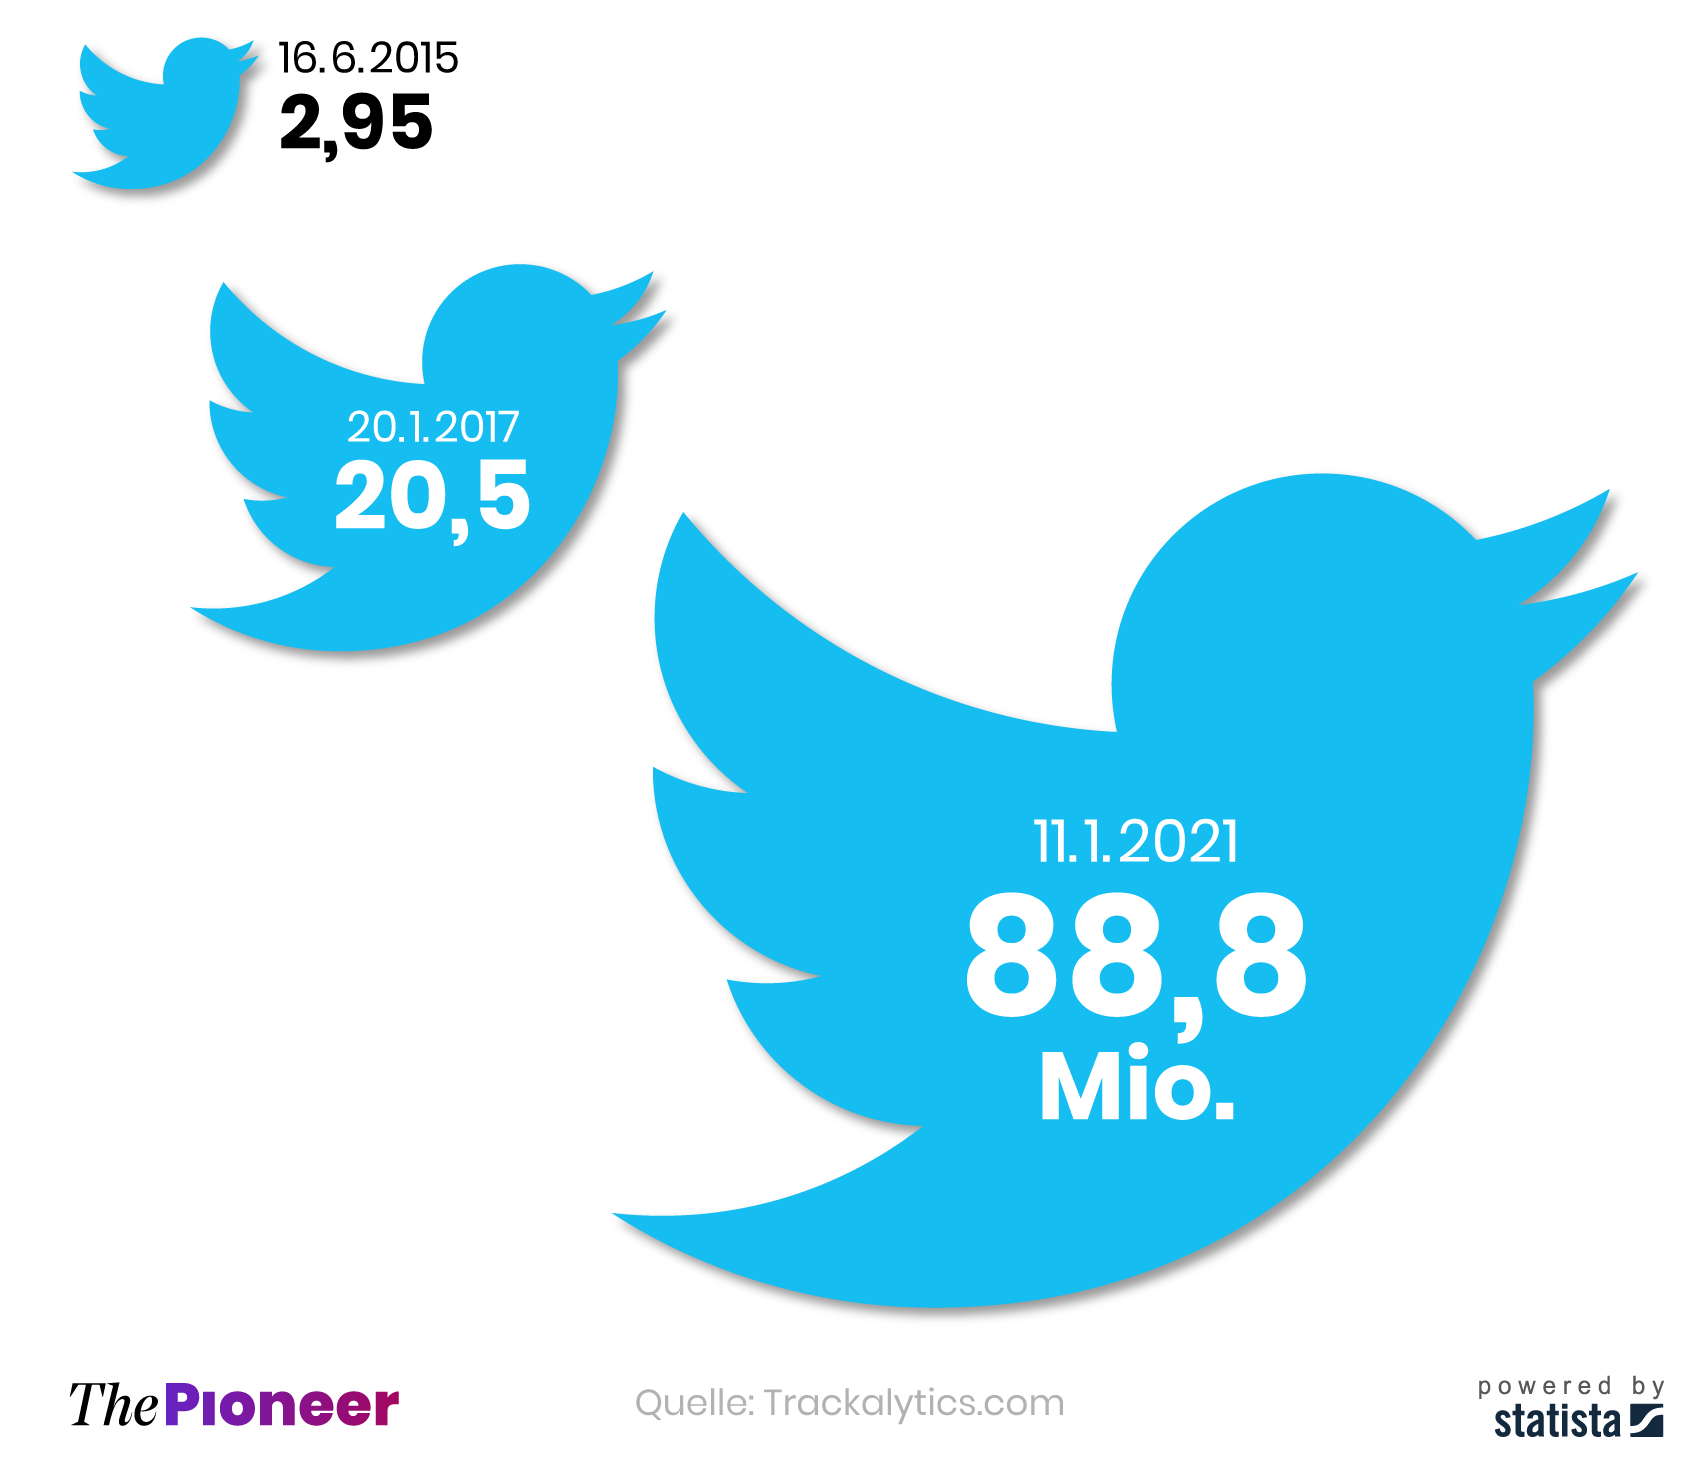 Anzahl der Twitter-Follower von Donald Trump am 16. Juni 2015 (Bekanntgabe der Präsidentschaftskandidatur), 20. Januar 2017 (Amtseinführung) und 11. Januar 2021, in Millionen 